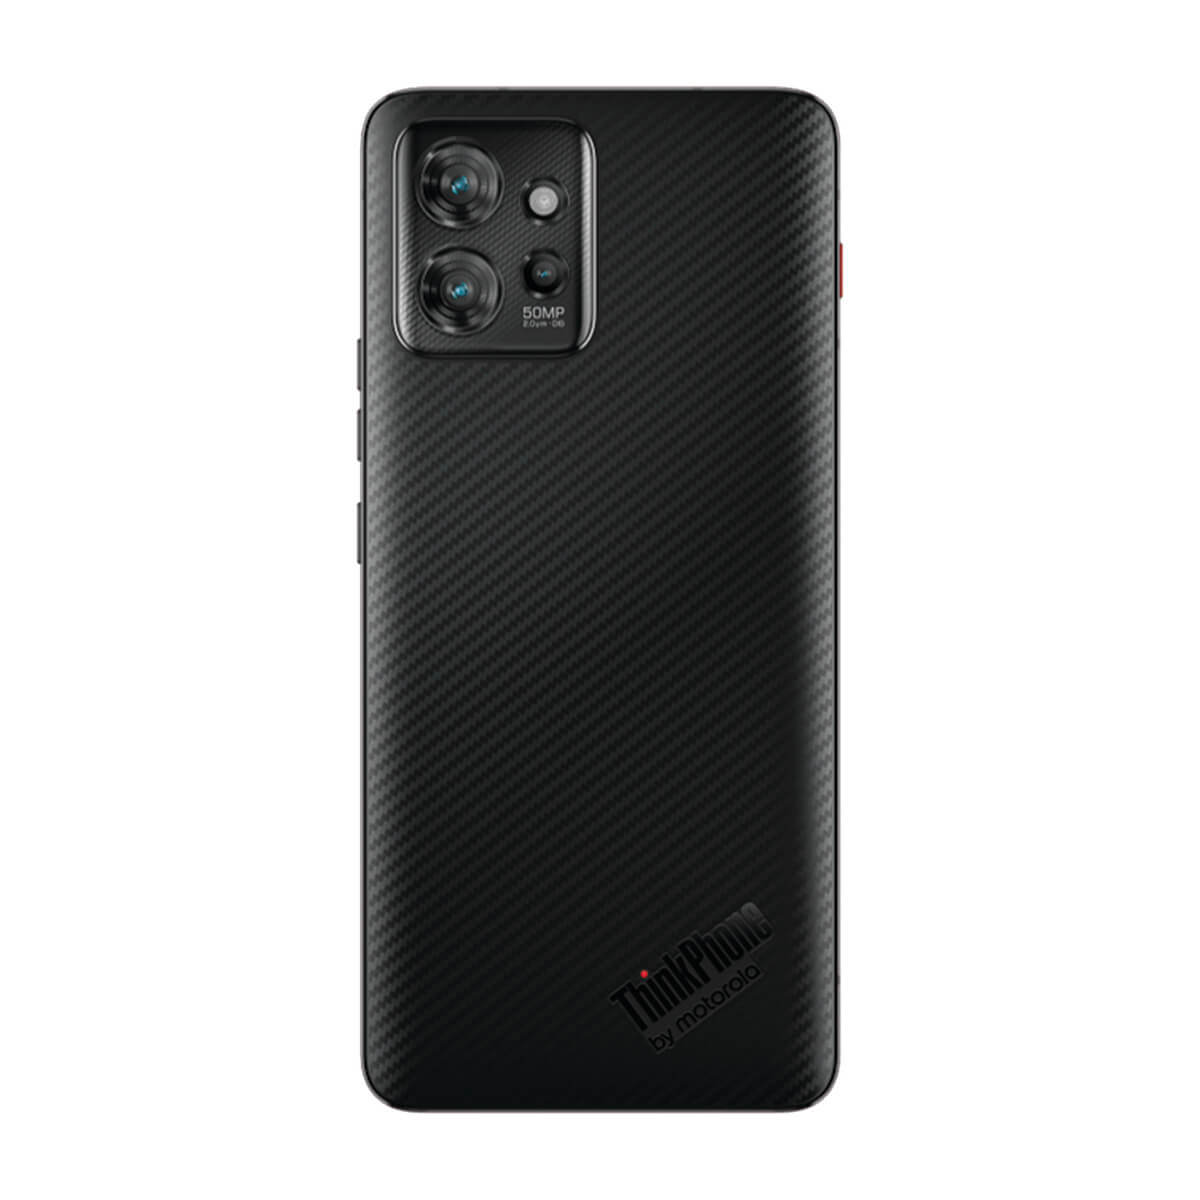 Motorola ThinkPhone 5G 8GB/256GB Black (Carbon Black) Dual SIM